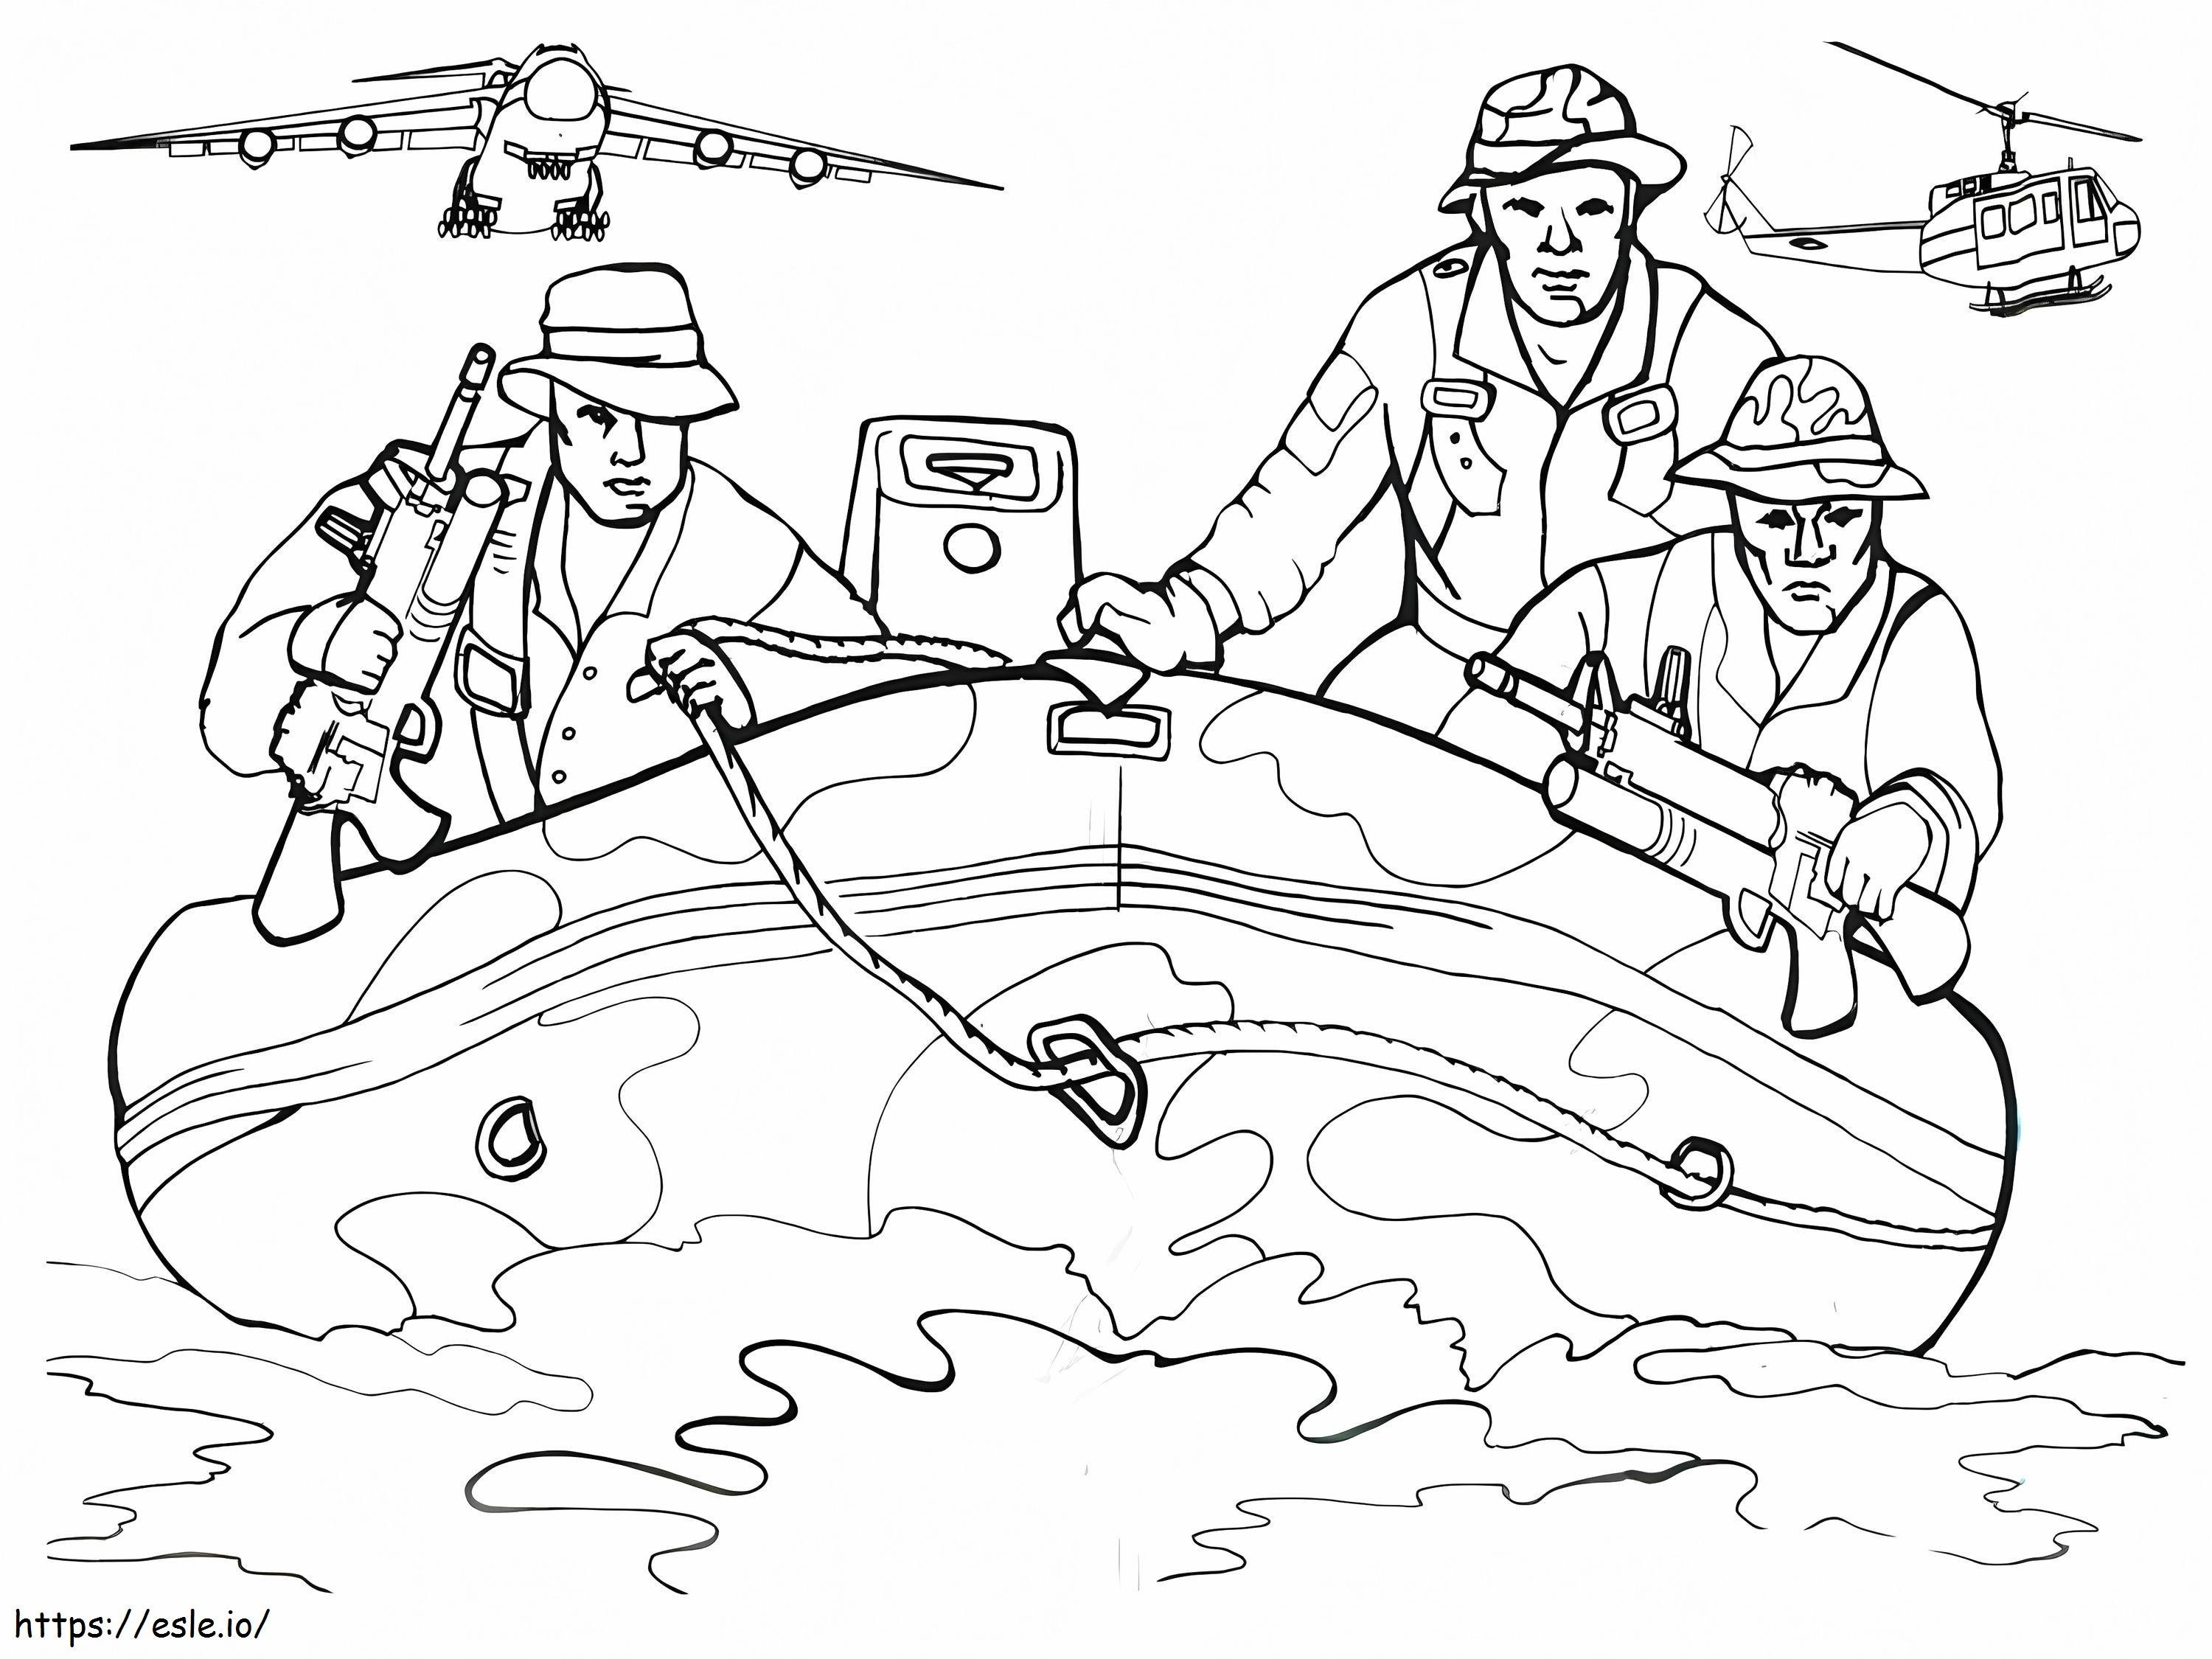 Memorial Day Navy Seals coloring page